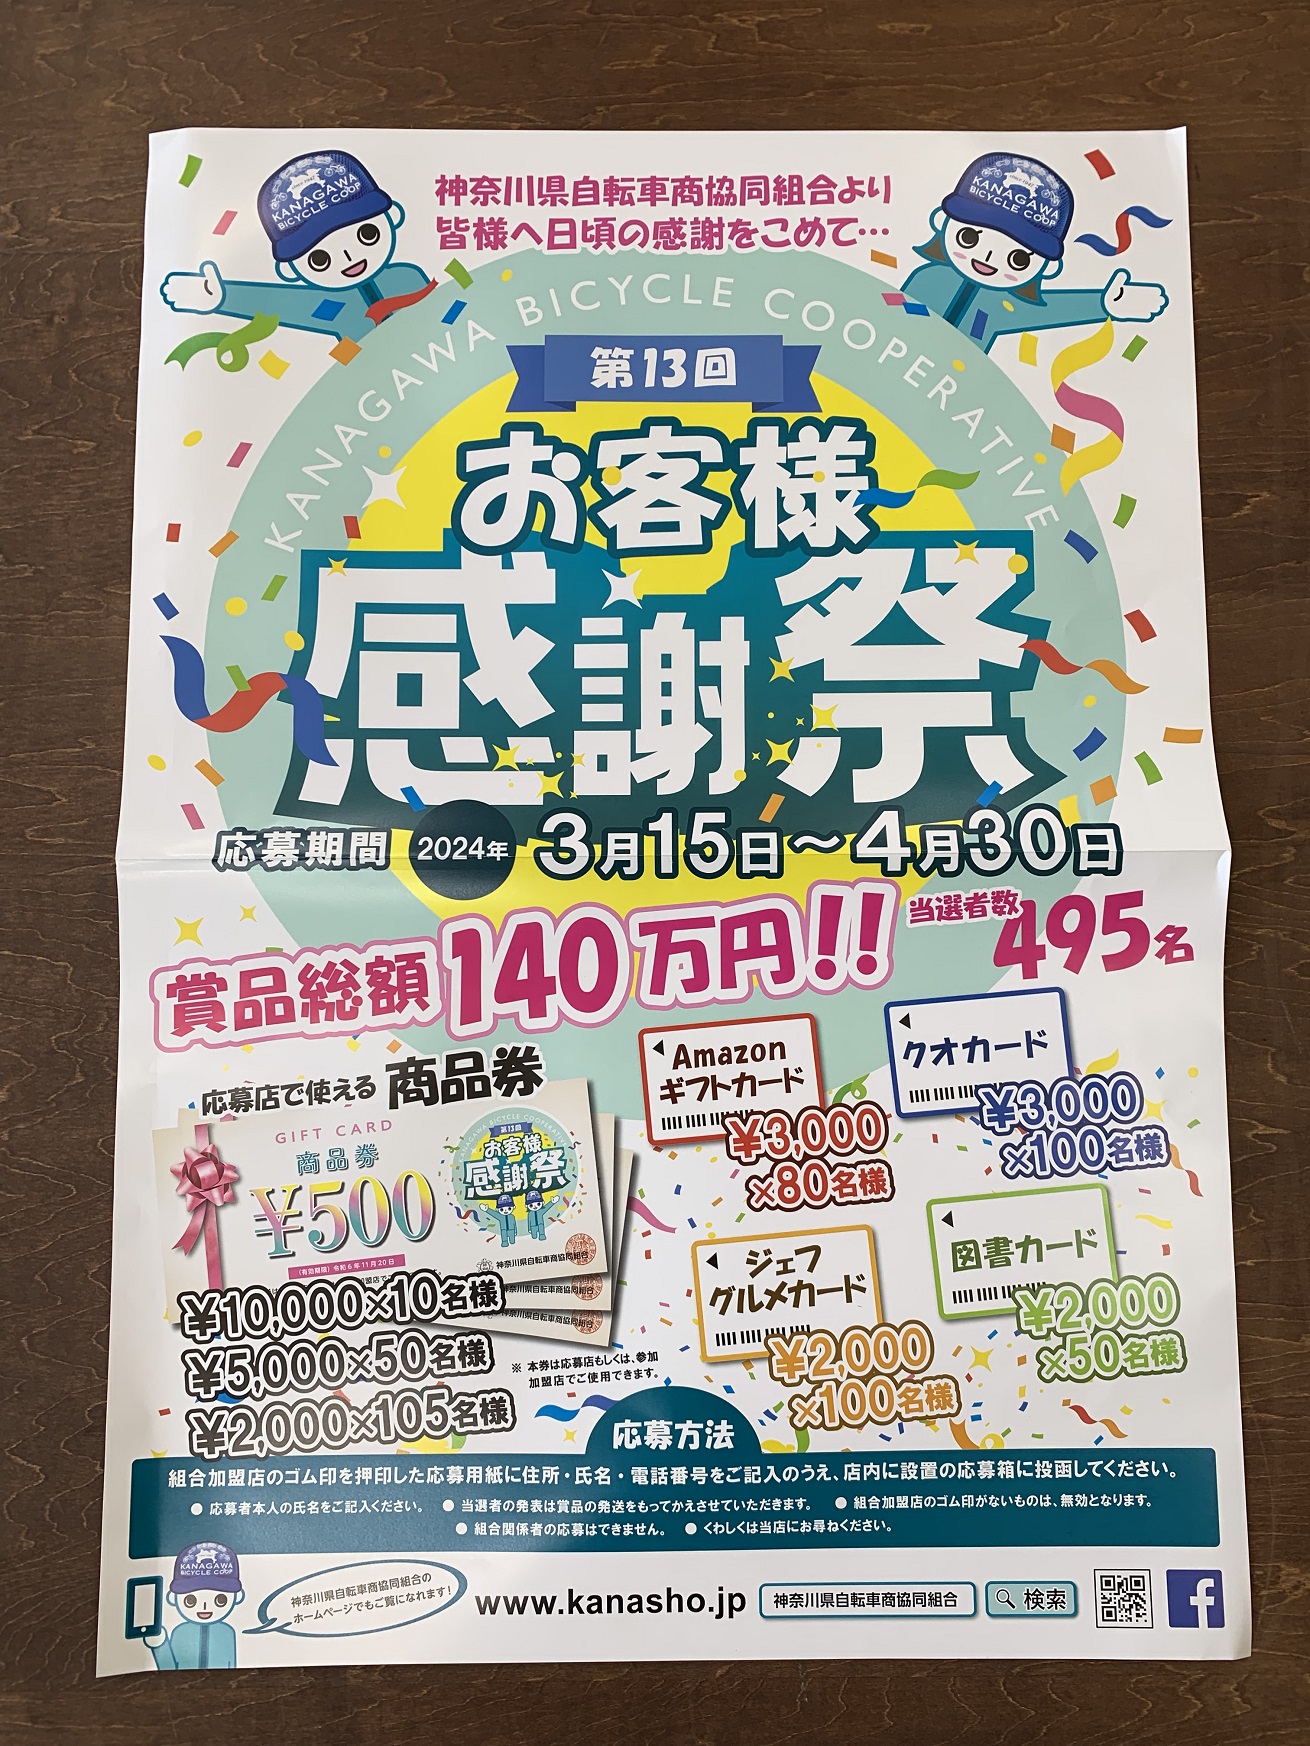 神奈川県自転車組合「第13回お客様感謝祭」告知ポスター